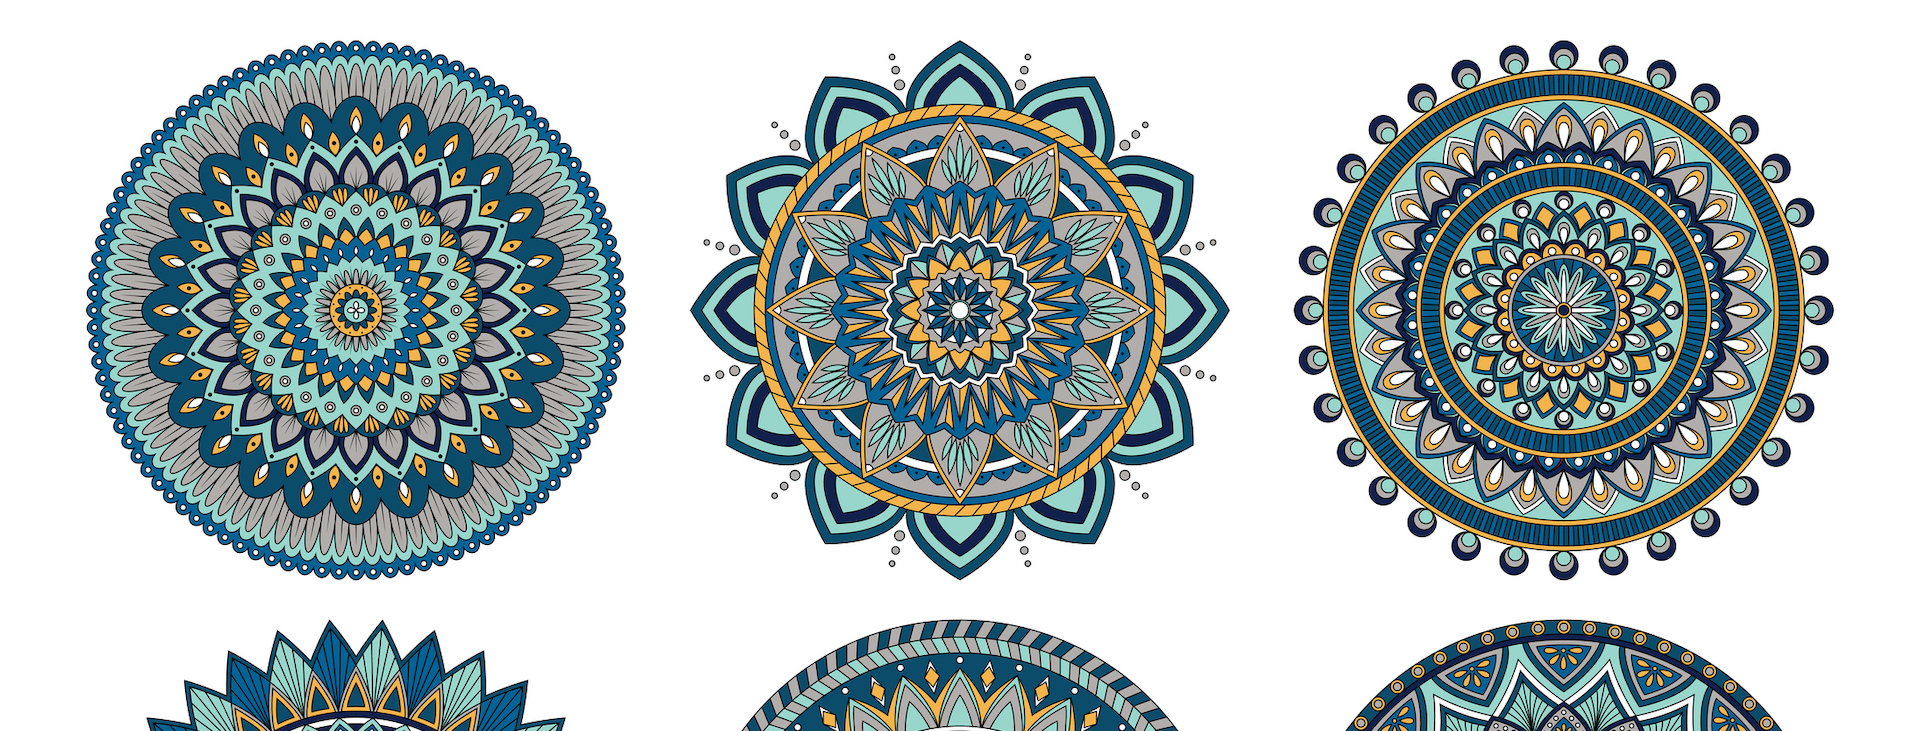 Repeated mandala pattern